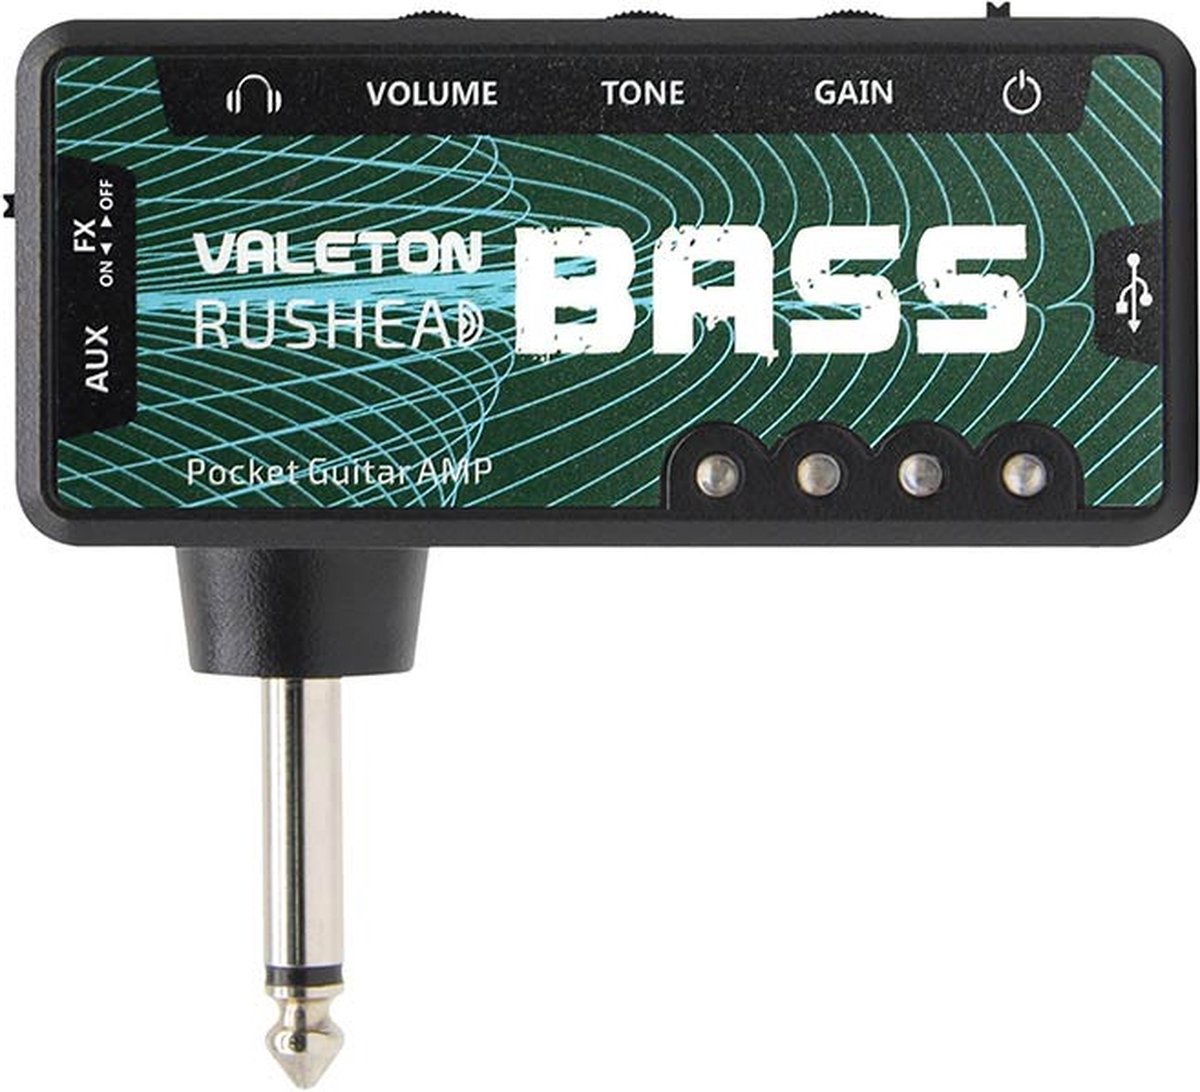 Oplaadbare koptelefoon bass amp Valeton RH-4 met drive